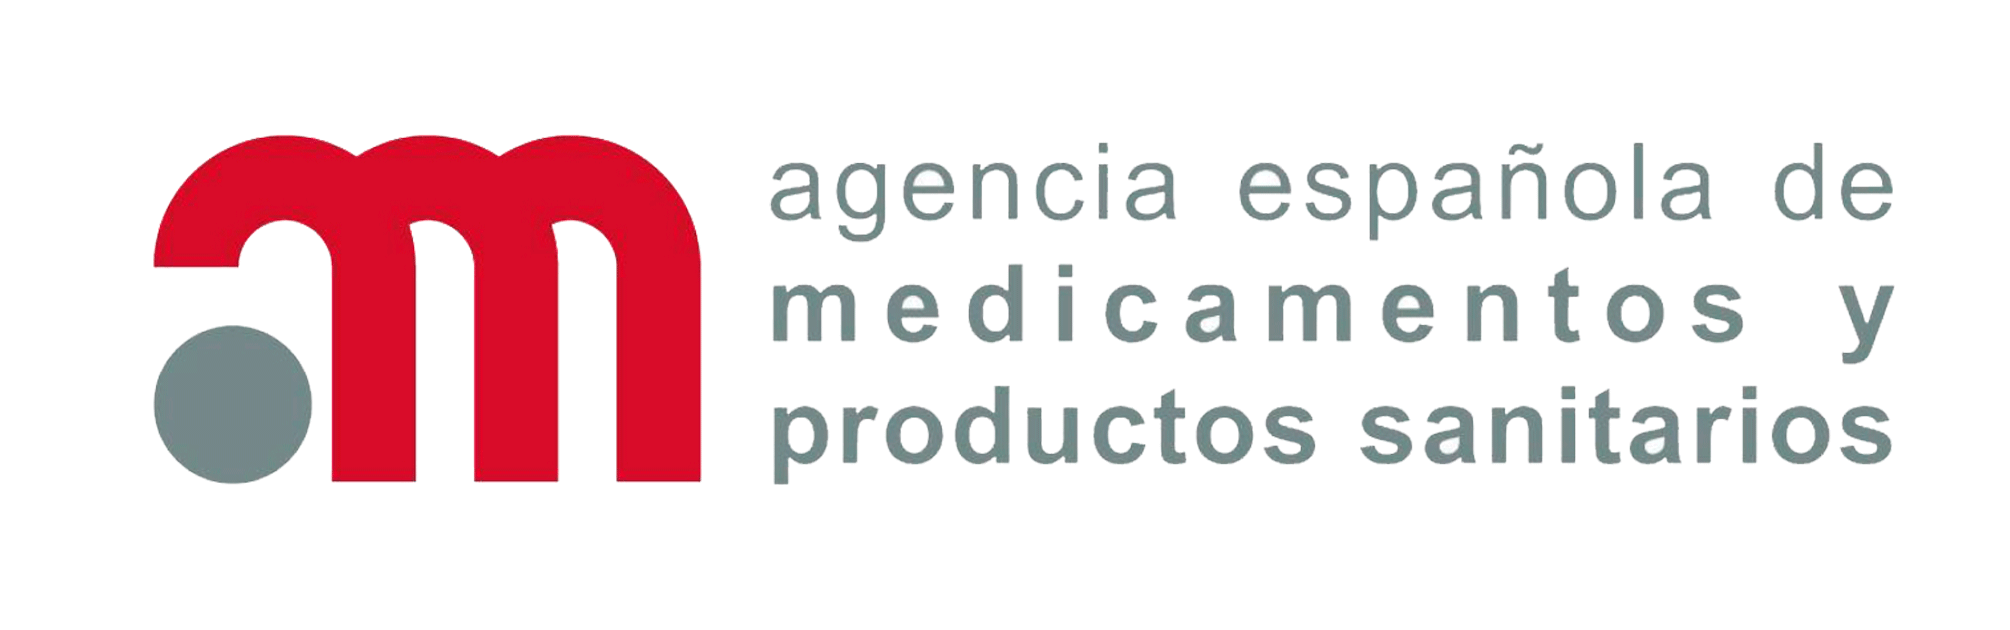 agencia-espanola-medicamentos